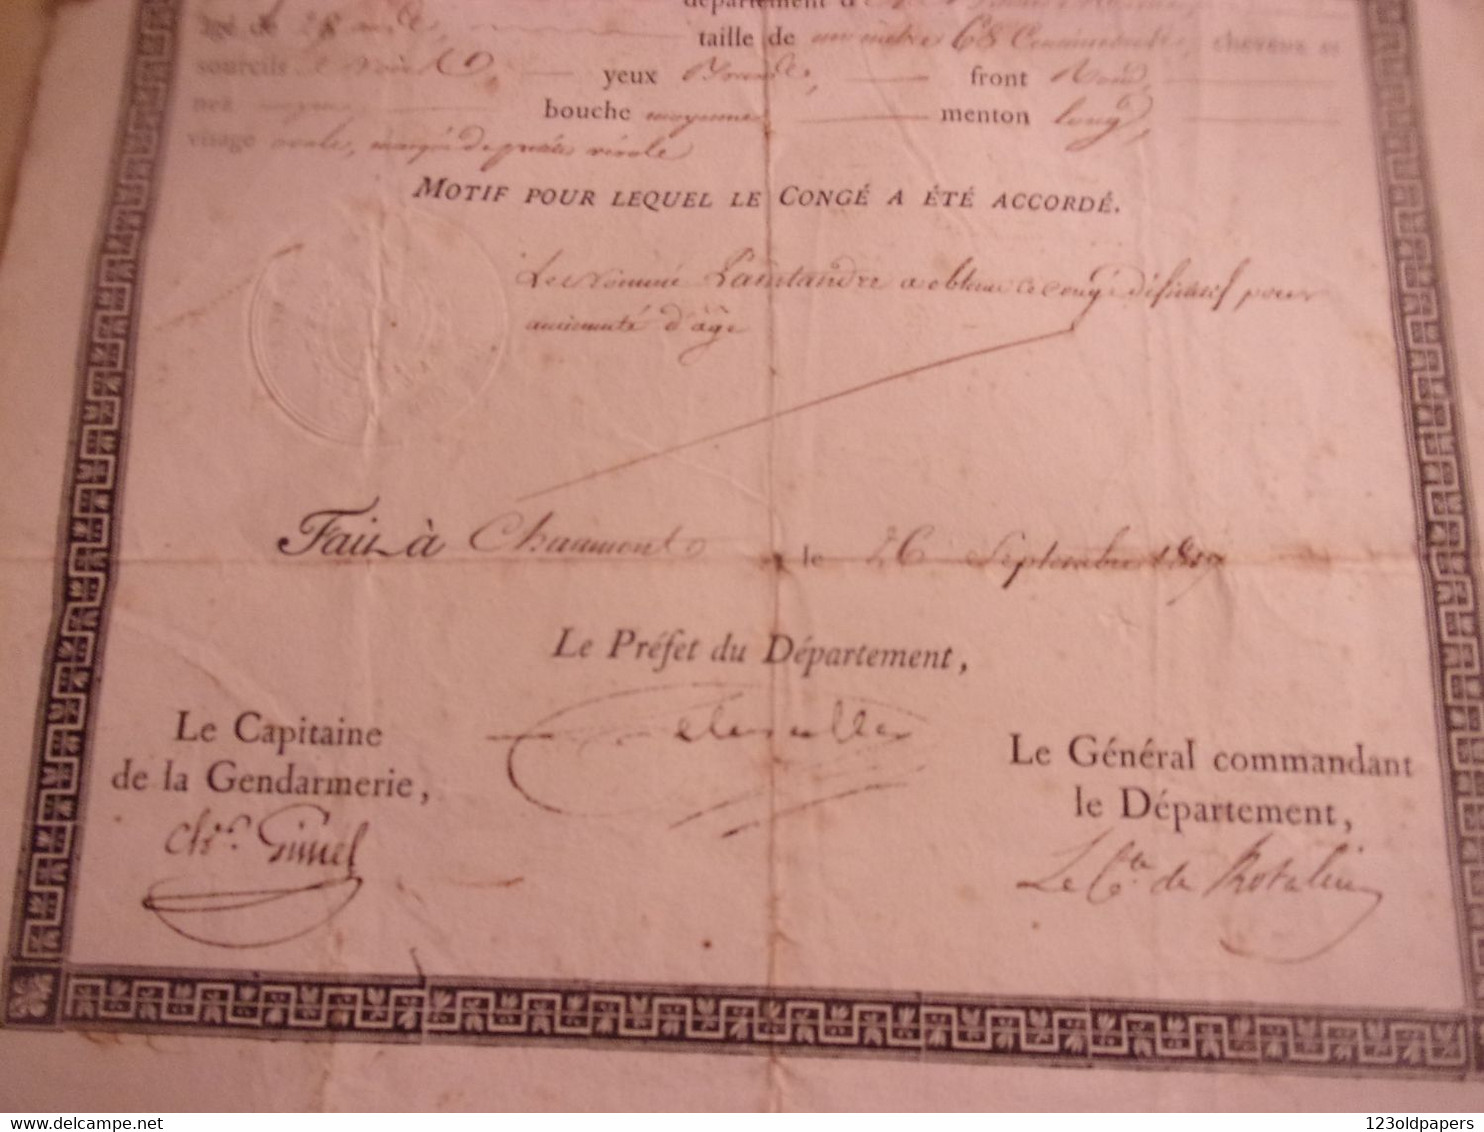 NAPOLEON GARDE IMPERIALE 1817 ROYAUME DE FRANCE CONGE DEFINITIF  FORCEY  2 EME REGIMENT TIRAILLEUR EX JEUNE GARDE - Dokumente